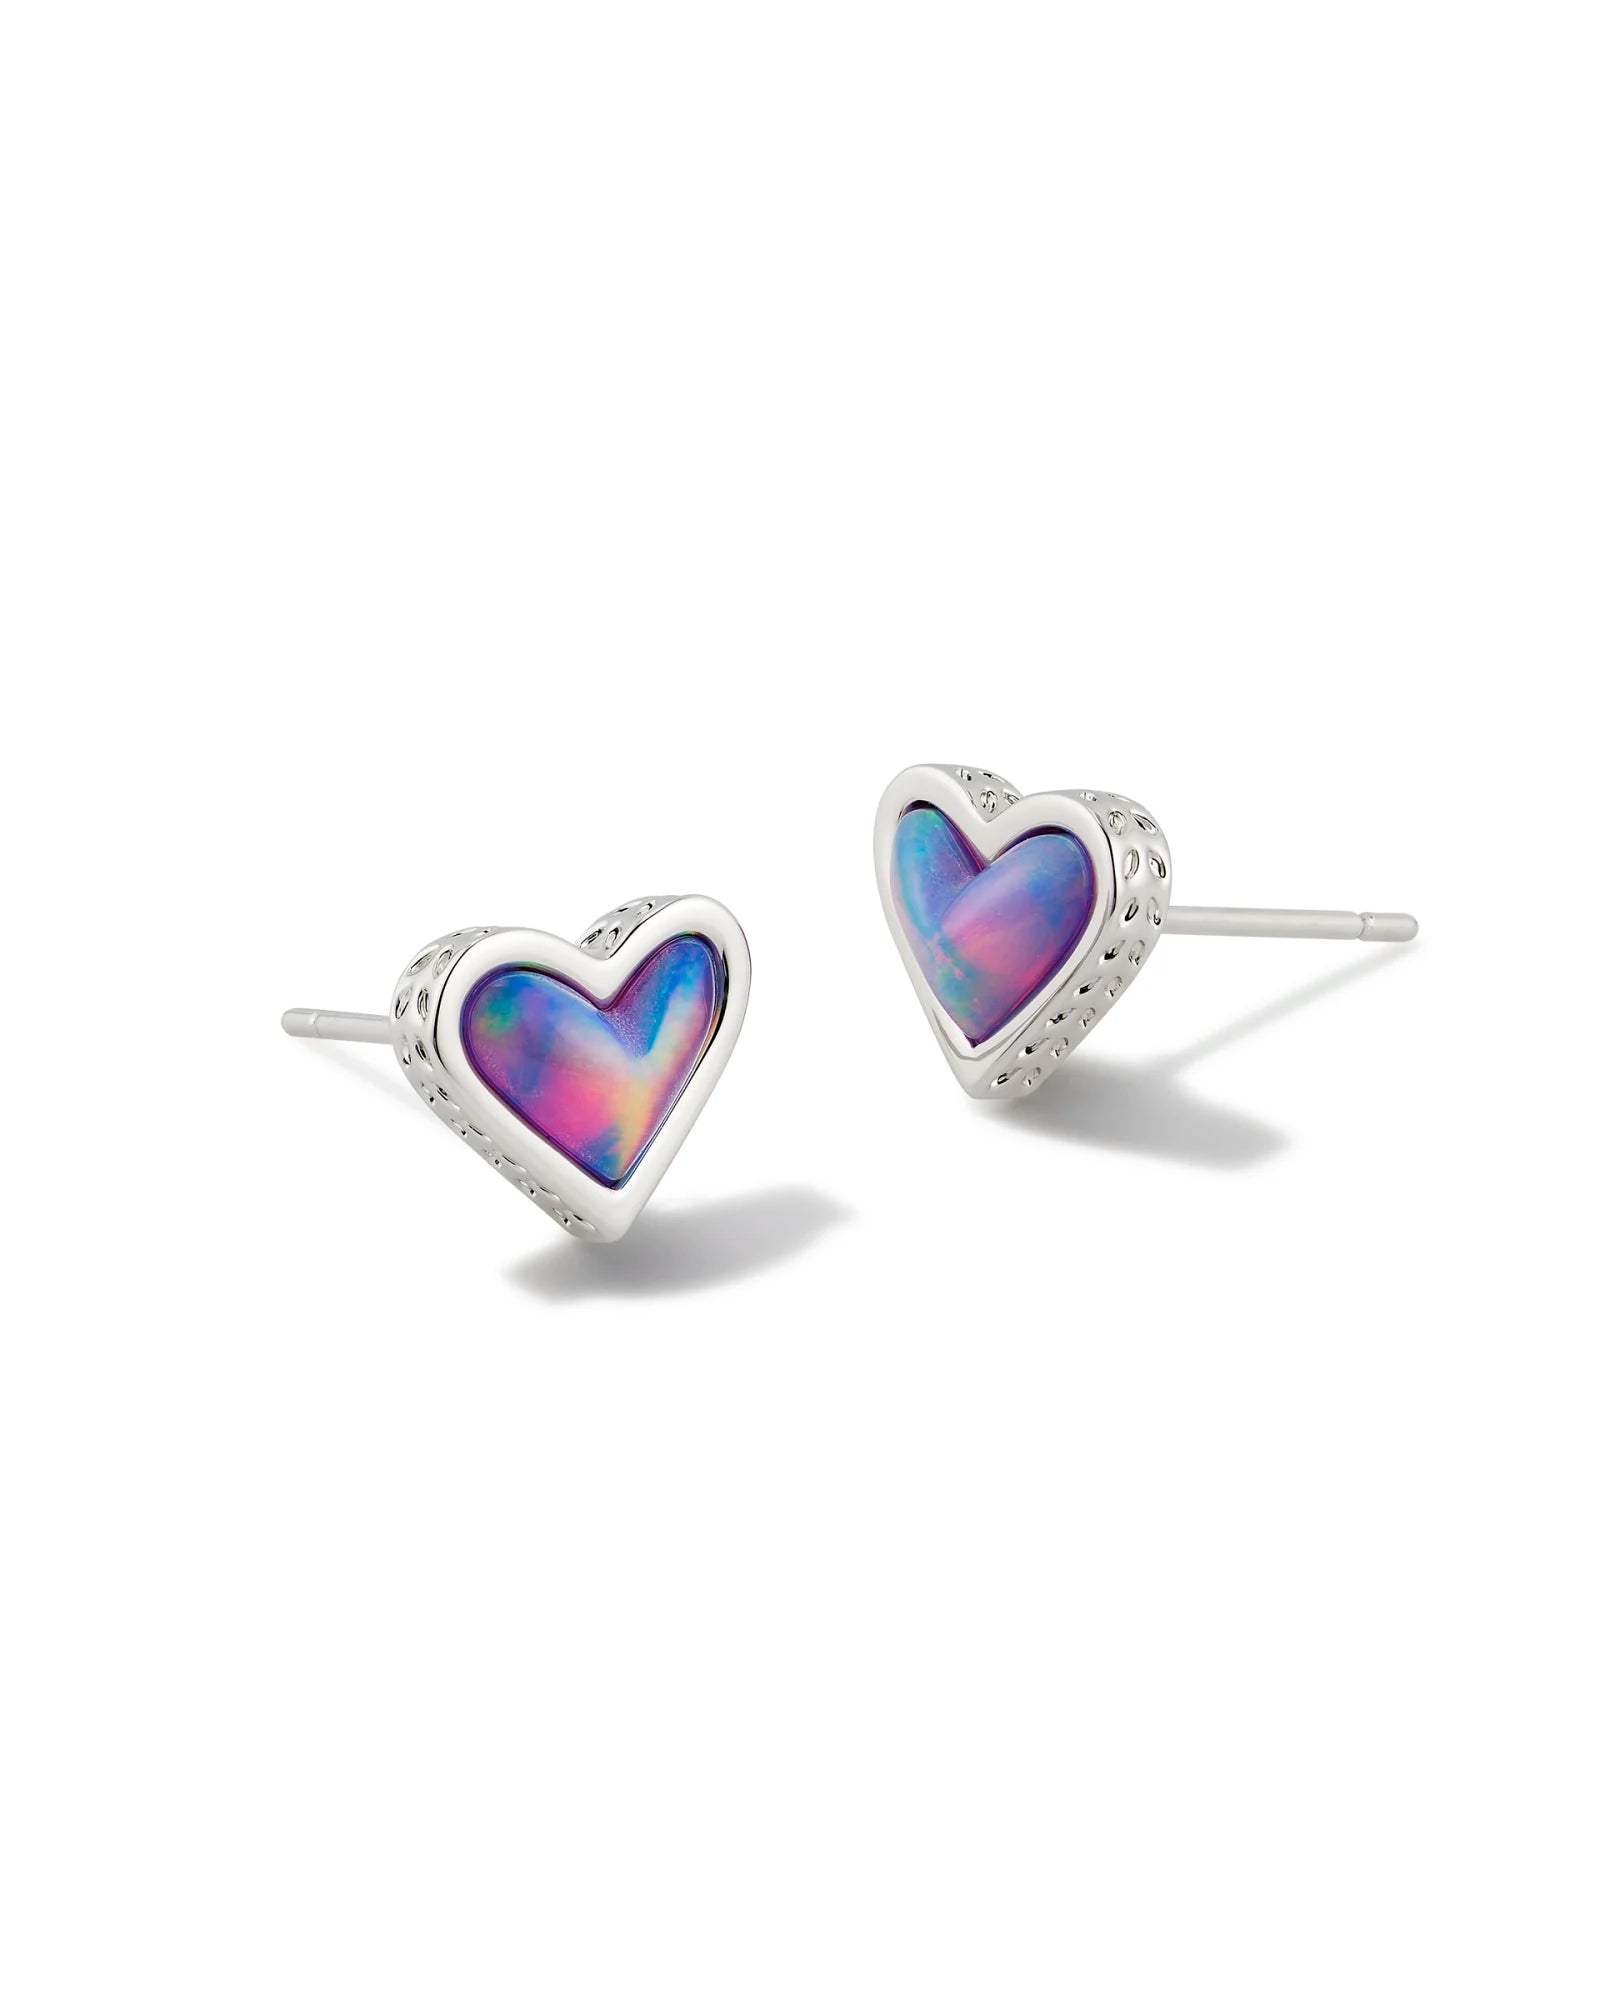 KENDRA SCOTT- Framed Ari Heart Silver Stud Earrings in Lilac Opal Resin